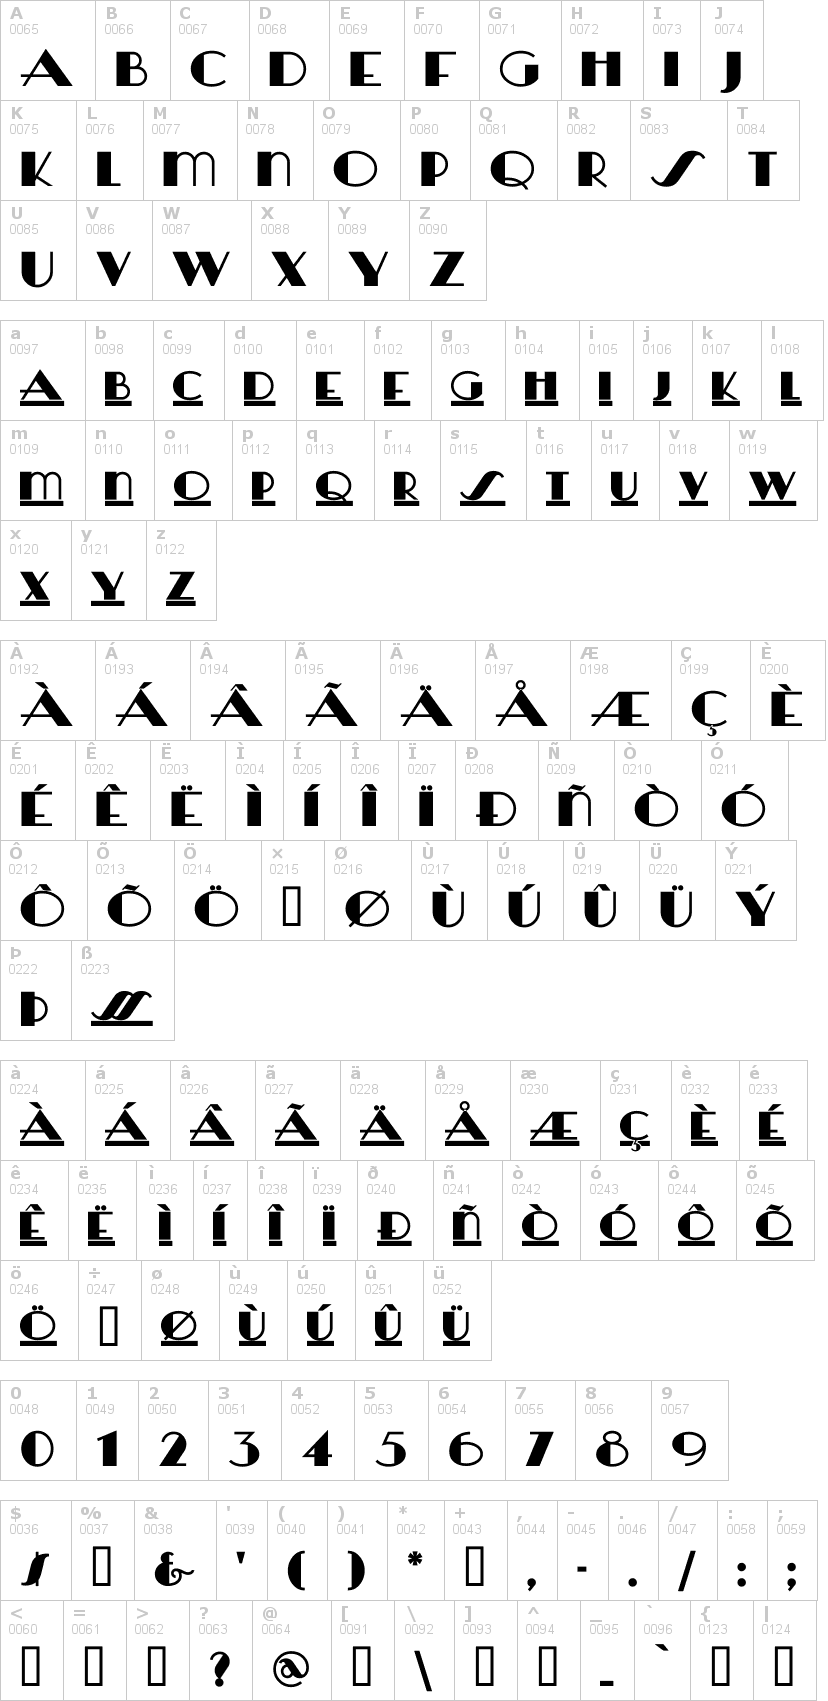 Lettere dell'alfabeto del font heraldsquare con le quali è possibile realizzare adesivi prespaziati